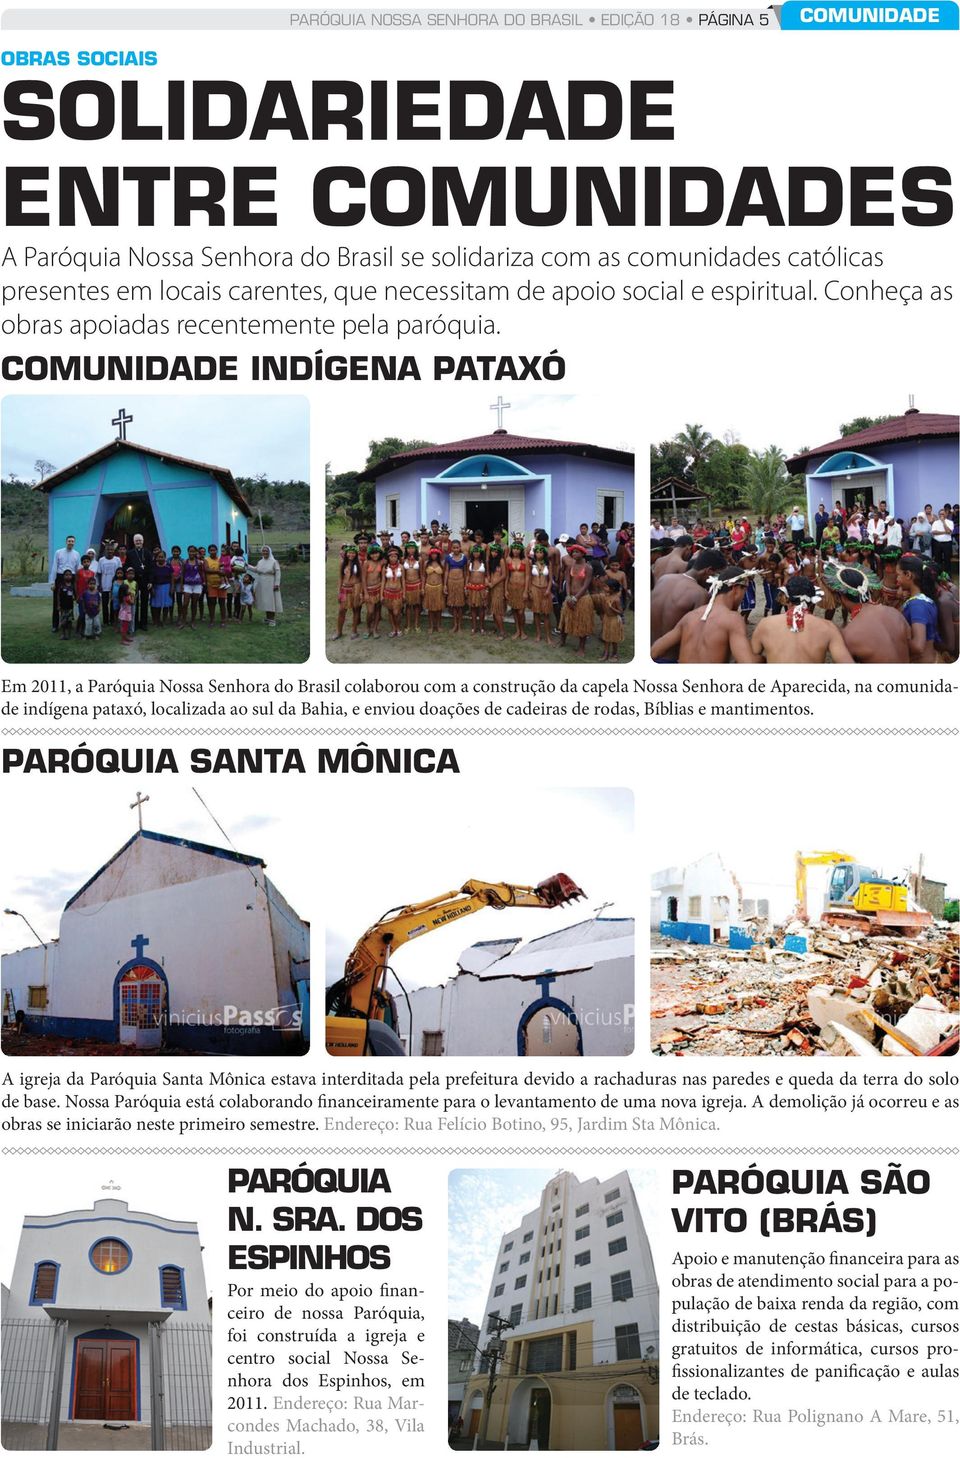 COMUNIDADE INDÍGENA PATAXÓ Em 2011, a Paróquia Nossa Senhora do Brasil colaborou com a construção da capela Nossa Senhora de Aparecida, na comunidade indígena pataxó, localizada ao sul da Bahia, e